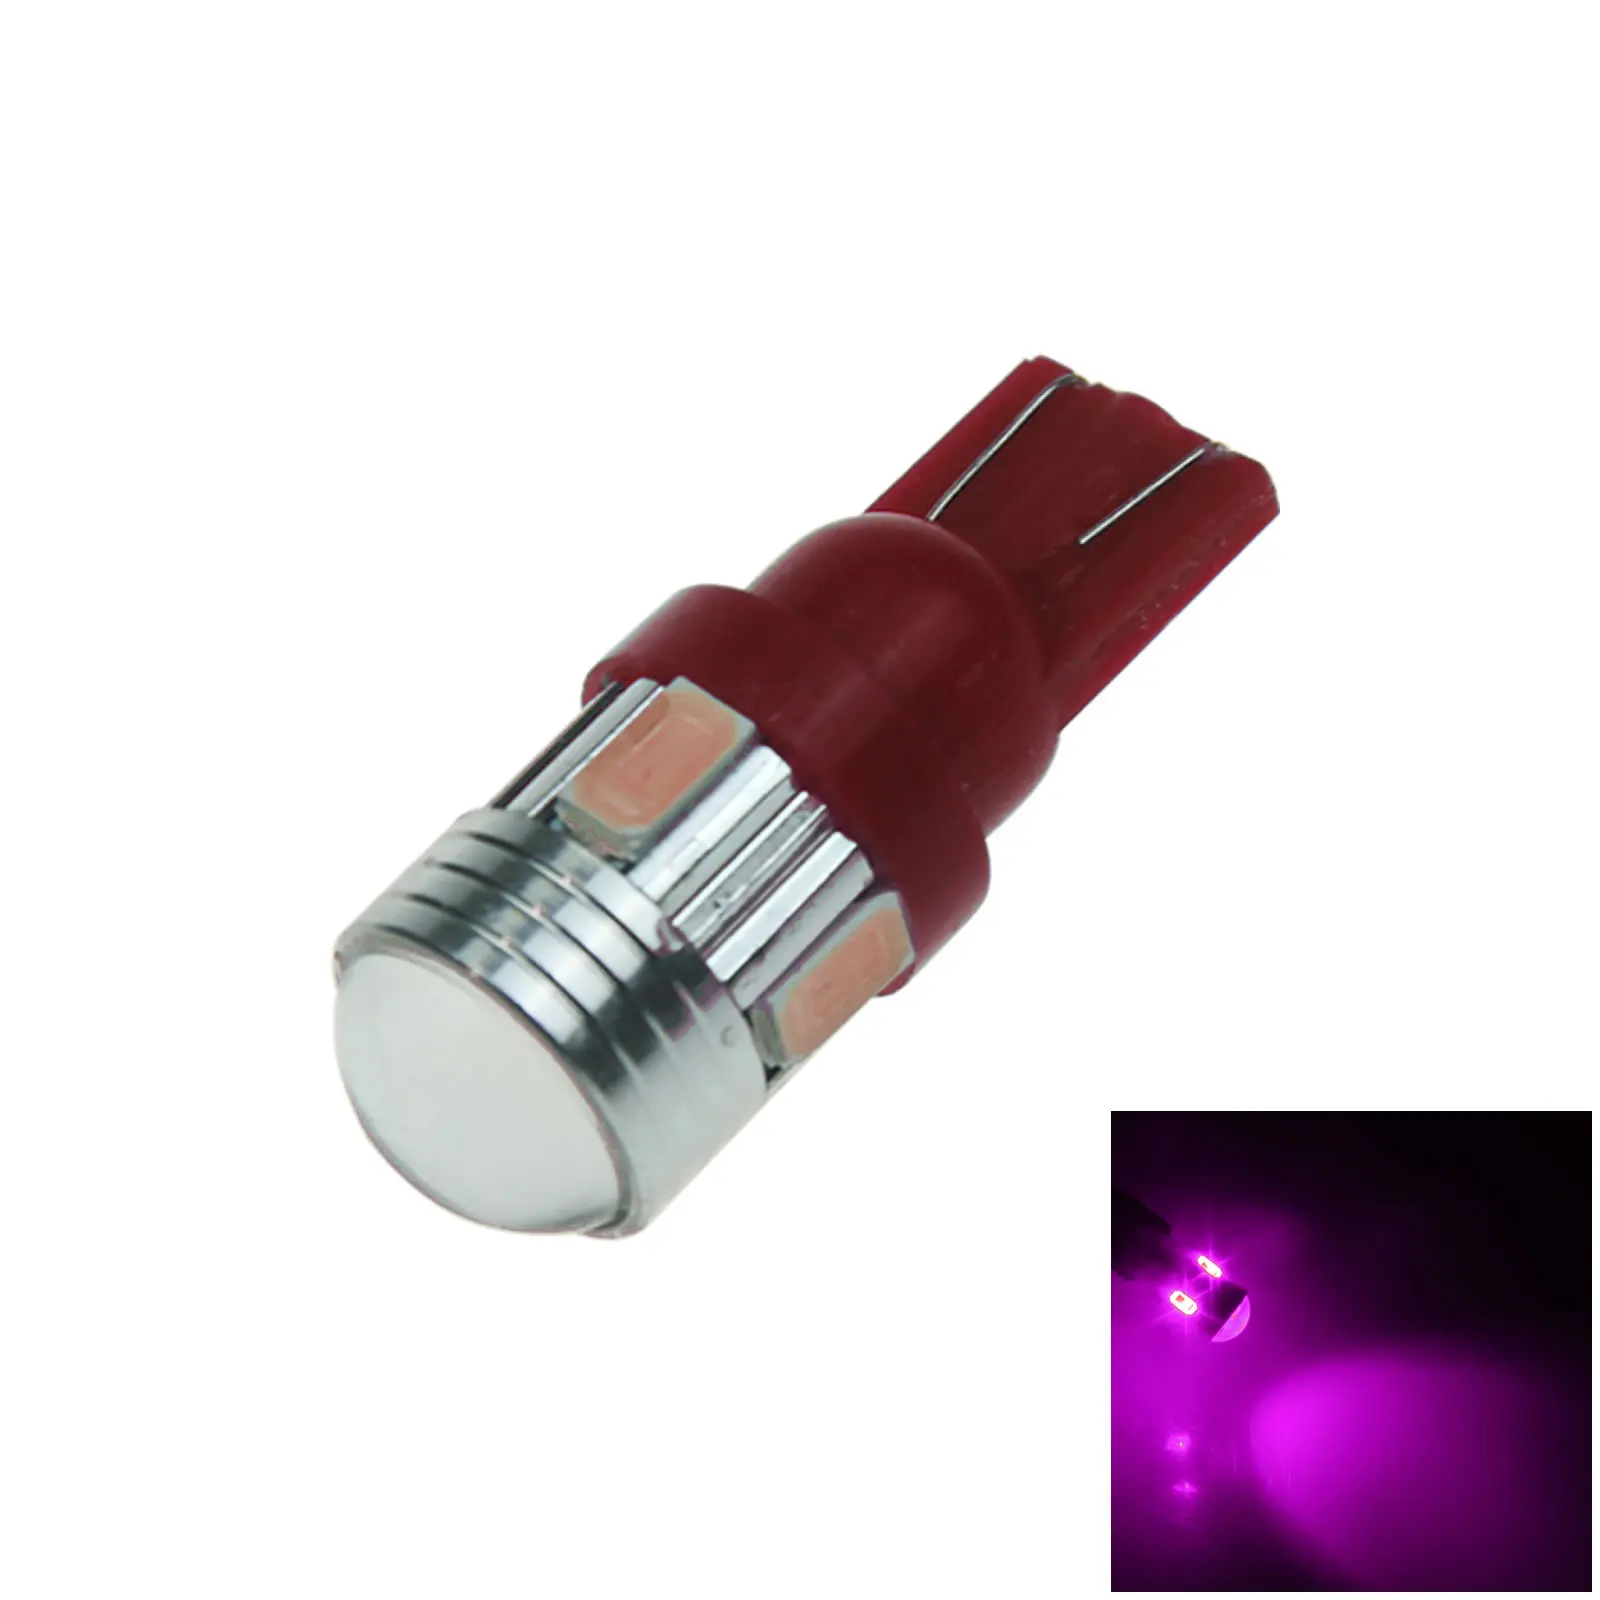 Фиолетовая led лампа 12v. Звездный излучатель 6